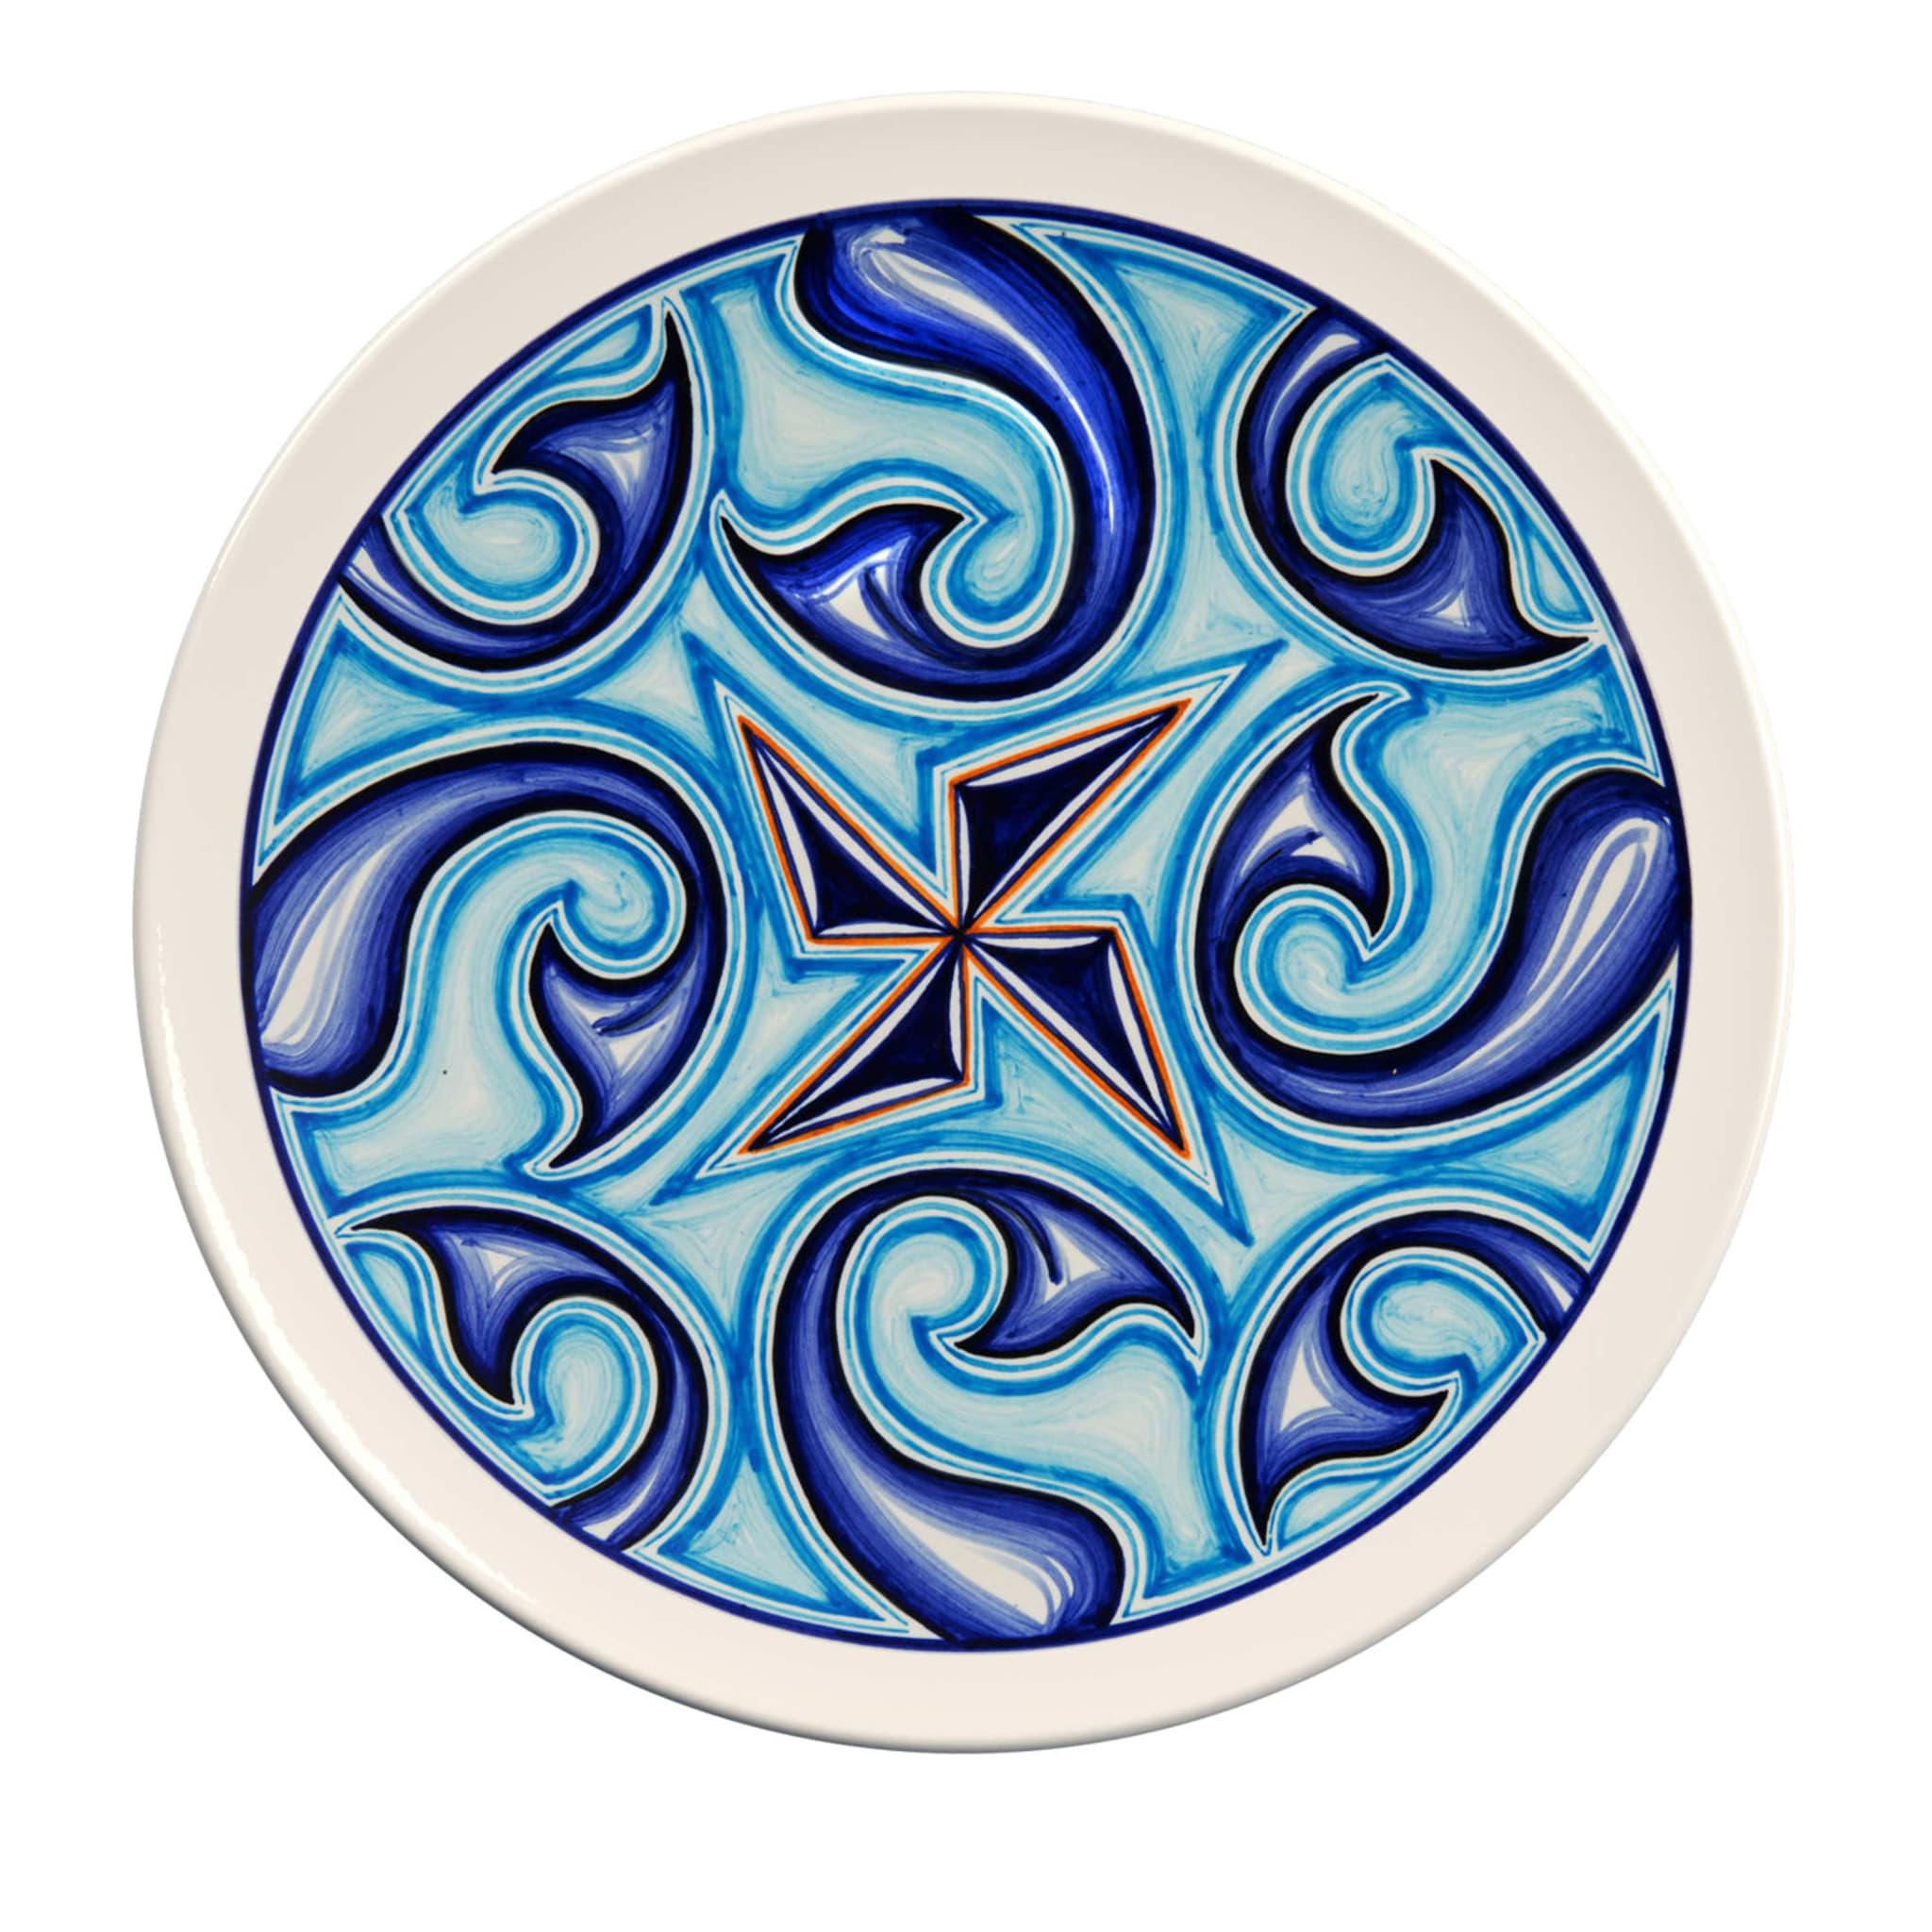 Placa decorativa Colapesce Sirene - Vista principal